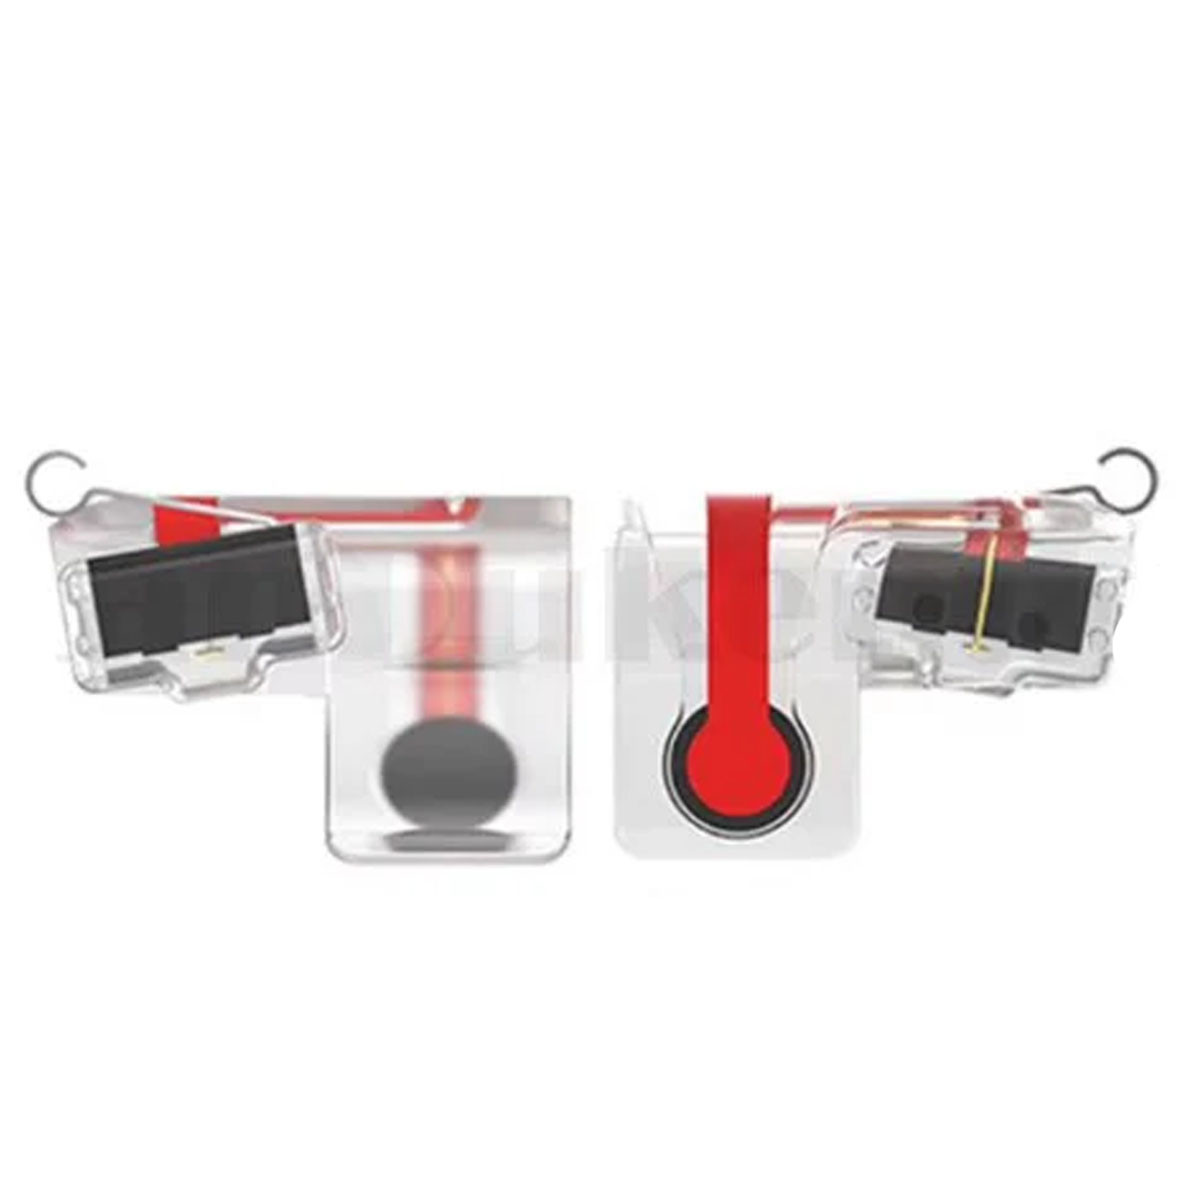 Триггеры контроллеры игровой курок универсальные карманные для смартфона MN